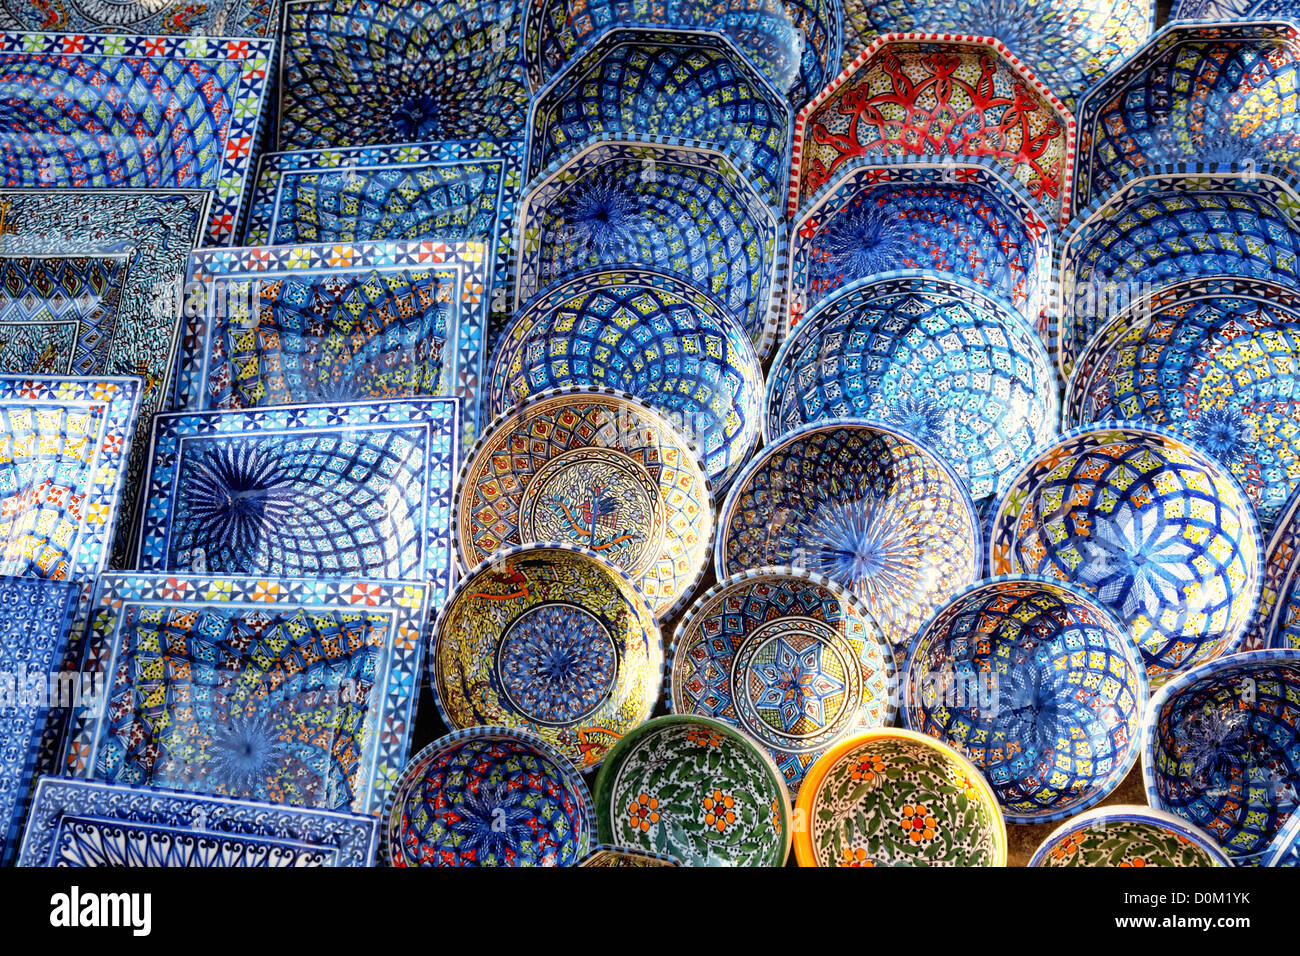 Recuerdo multicolor loza en el mercado tunecino, Sidi Bou Said, Túnez Foto de stock